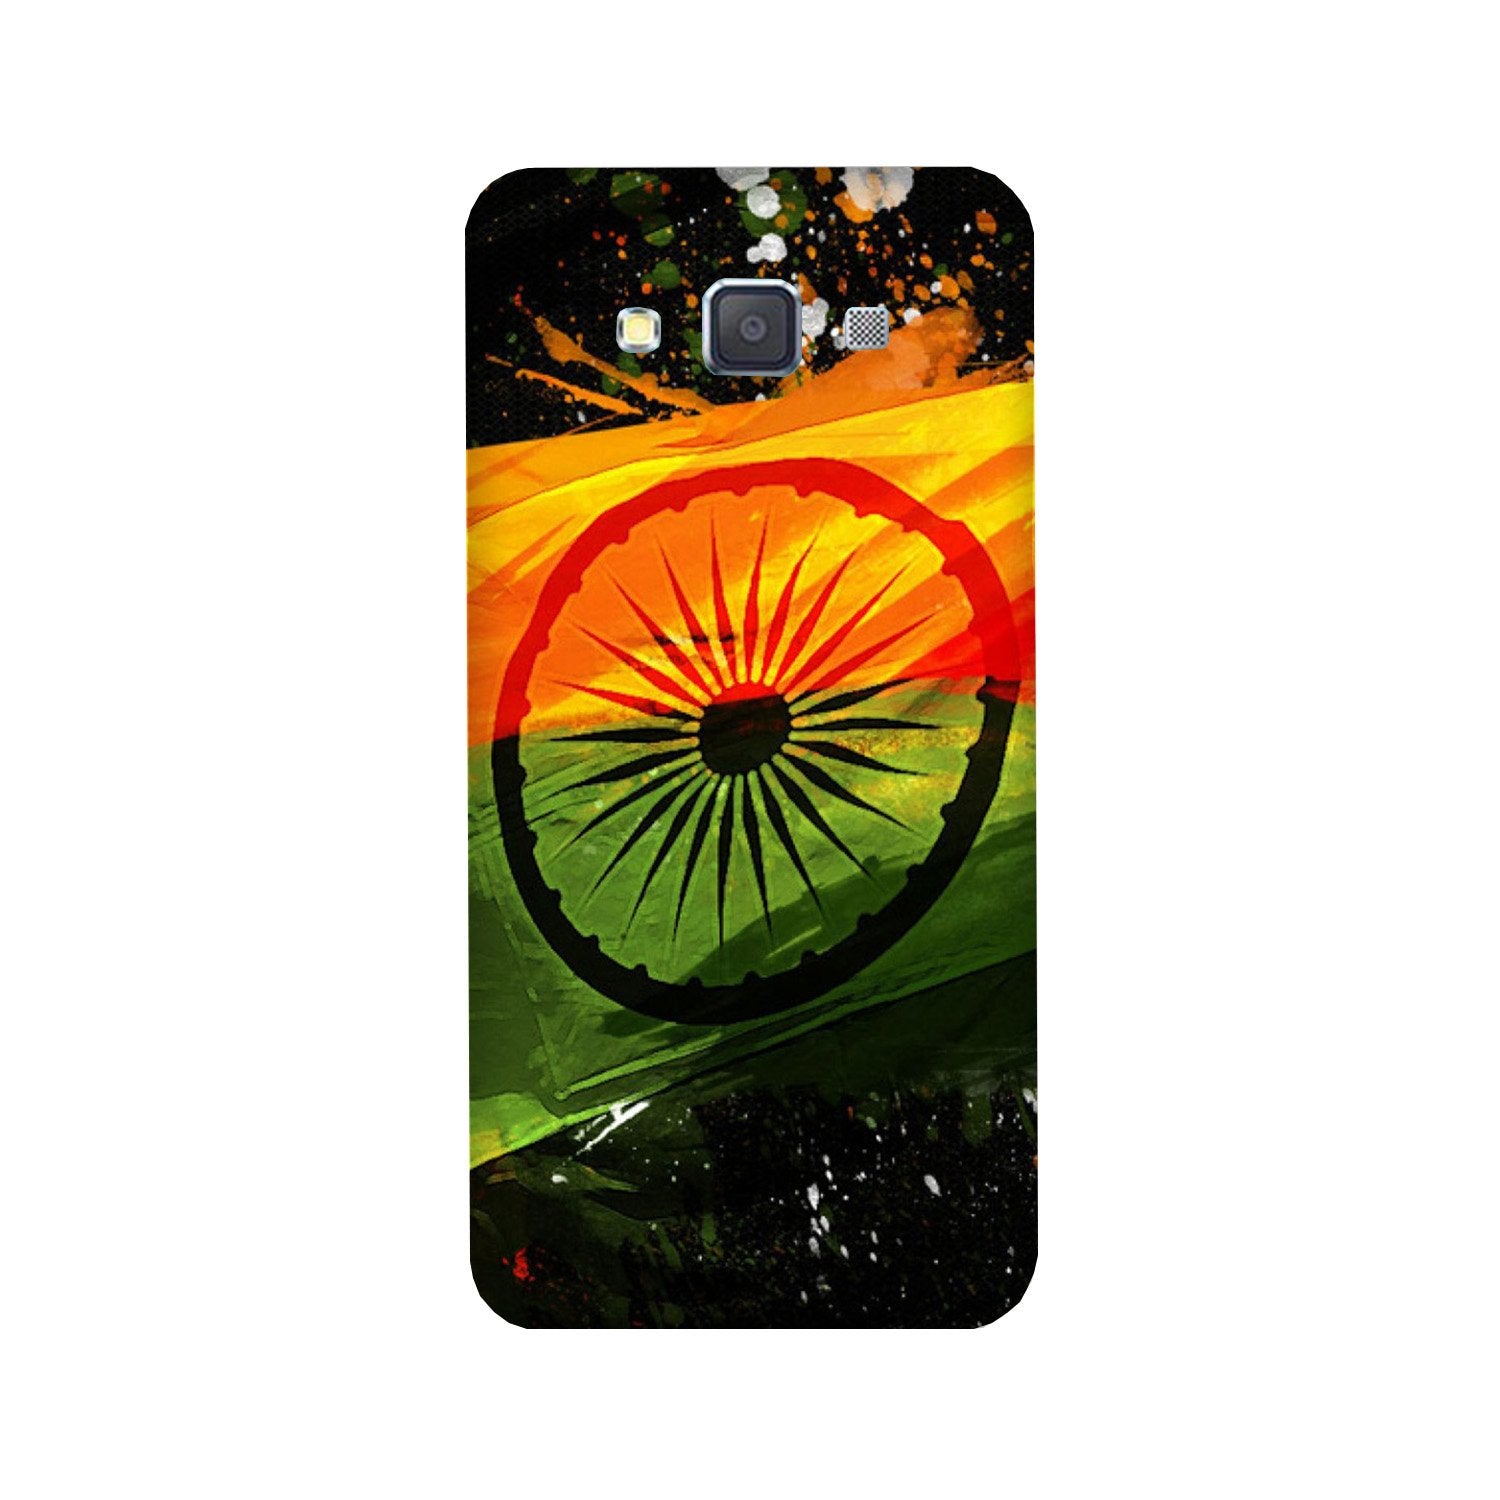 Indian Flag Case for Galaxy E5(Design - 137)